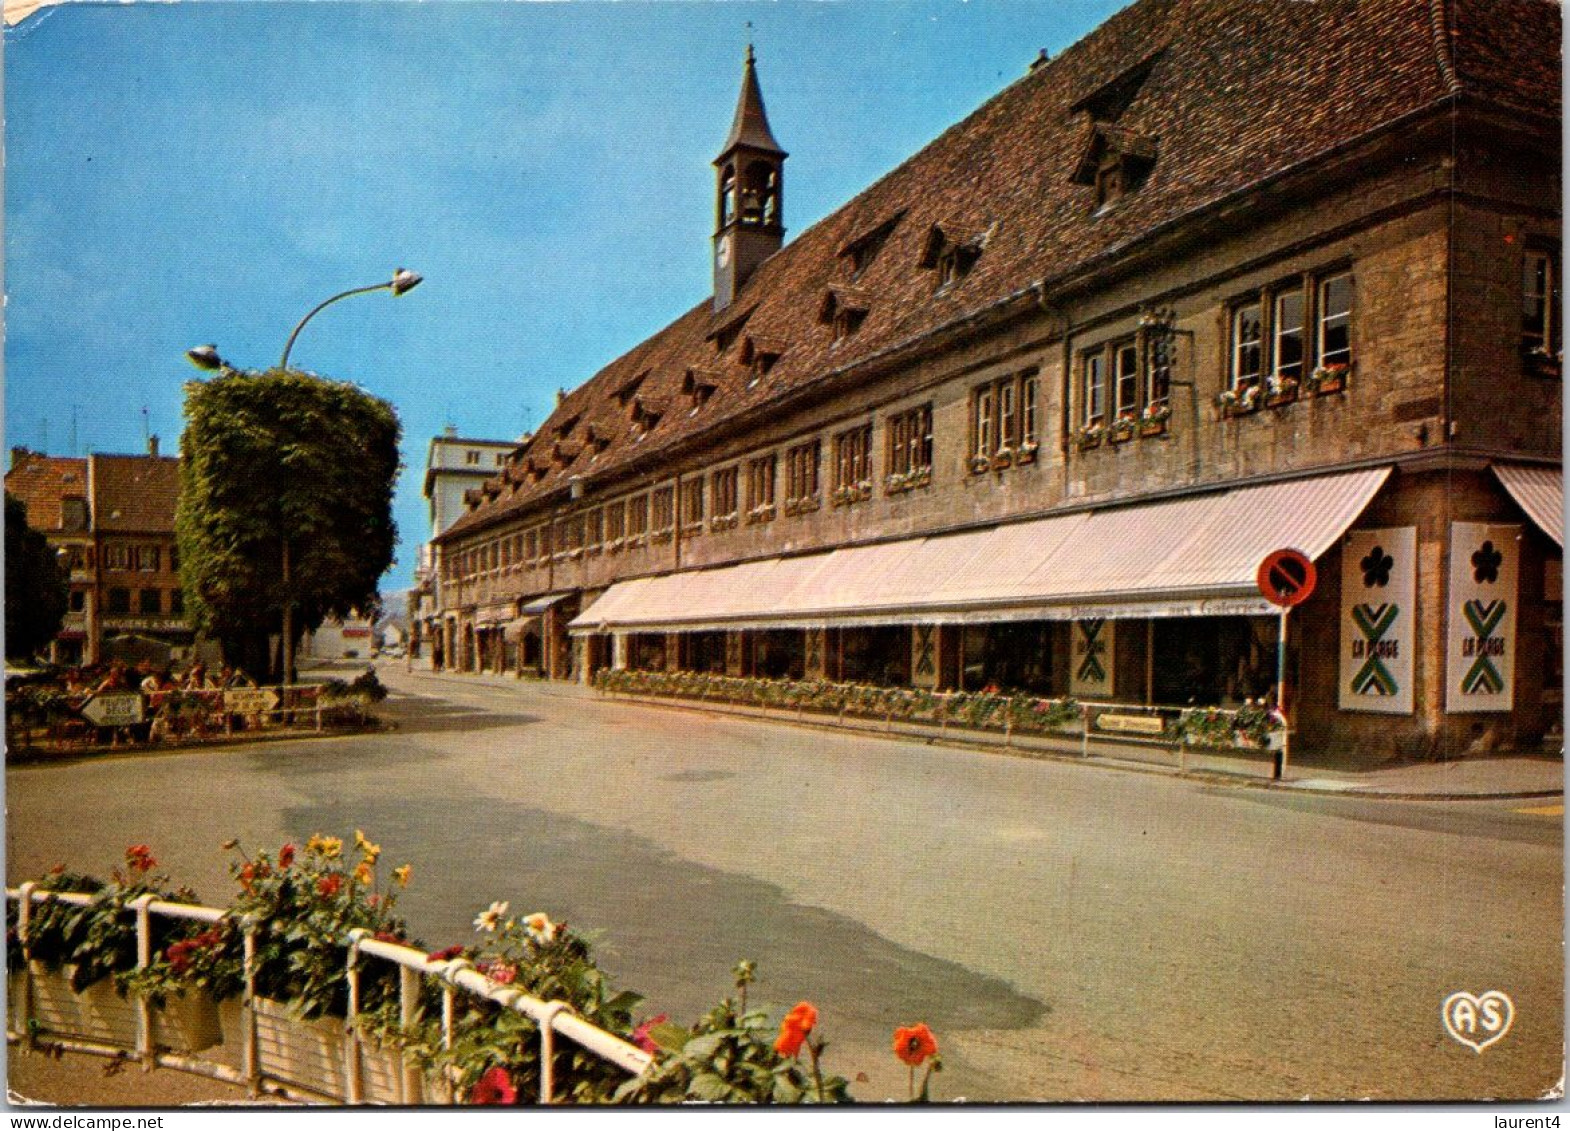 (3 Q 19) France - Les Halles De Montbeliard (Market) - Halles